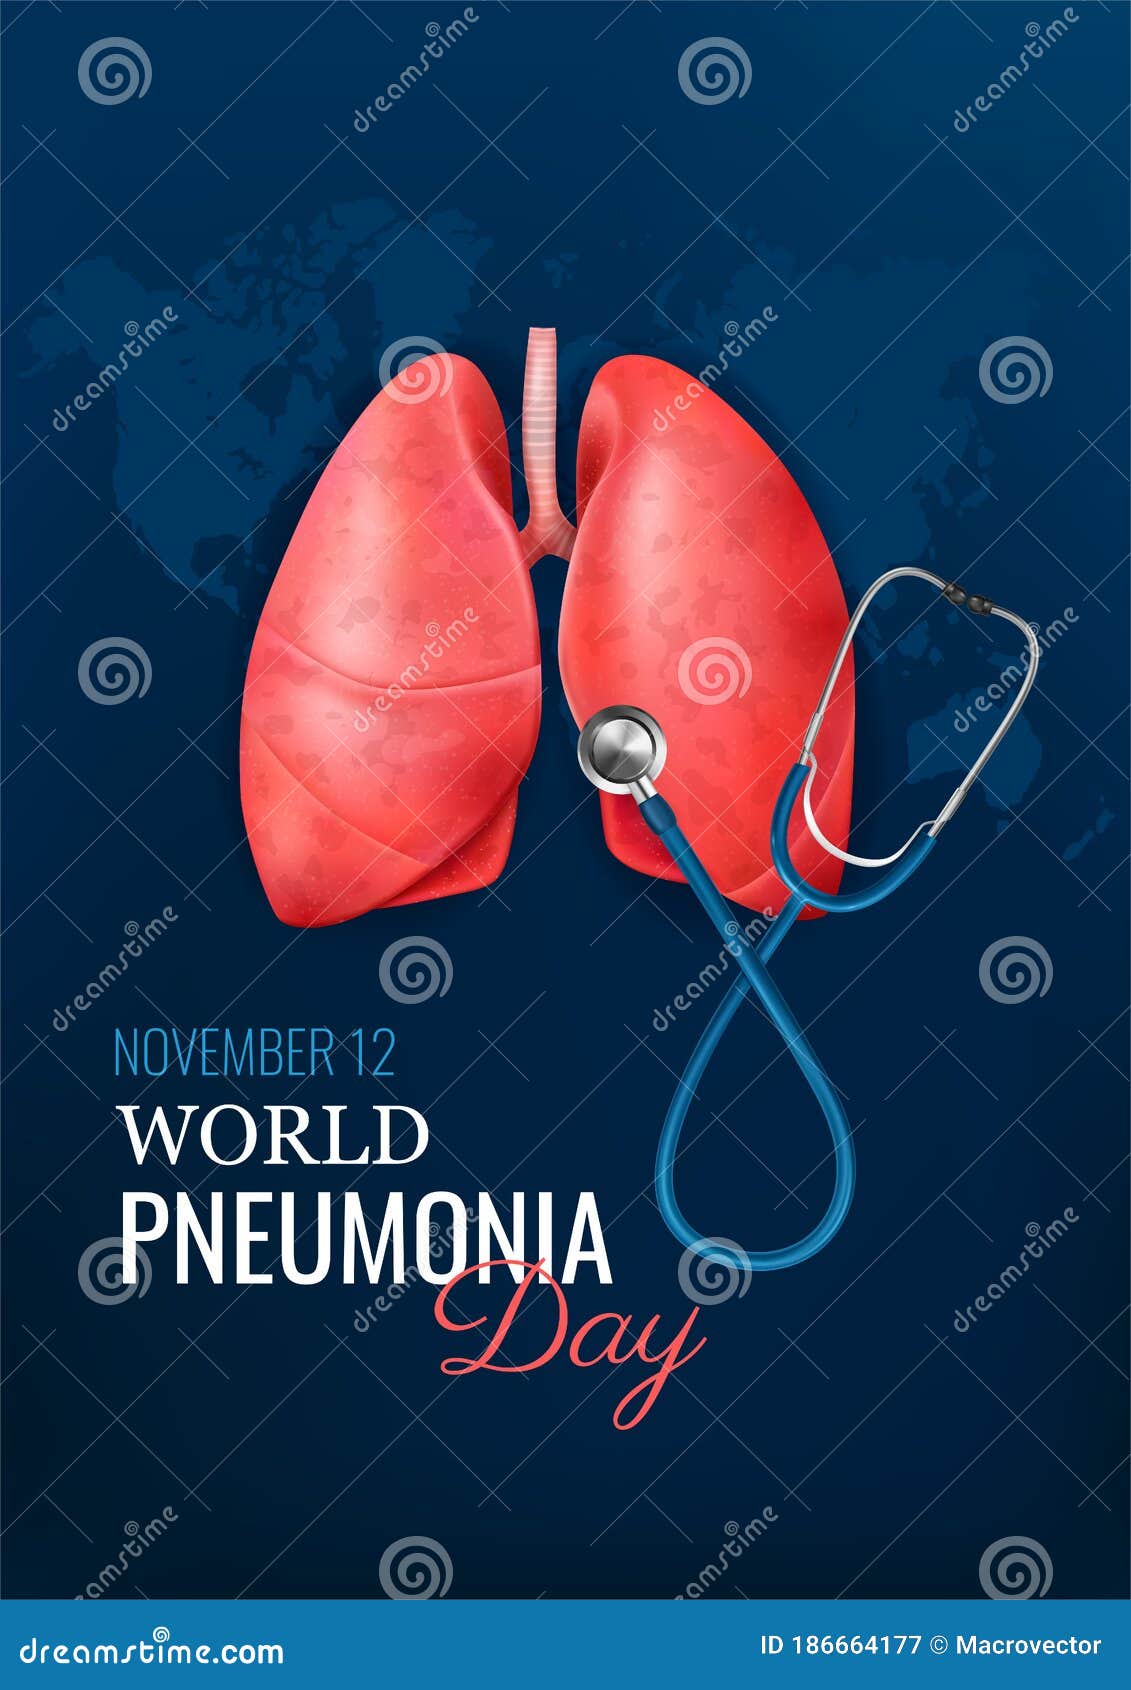 pneumonia day realistic concept